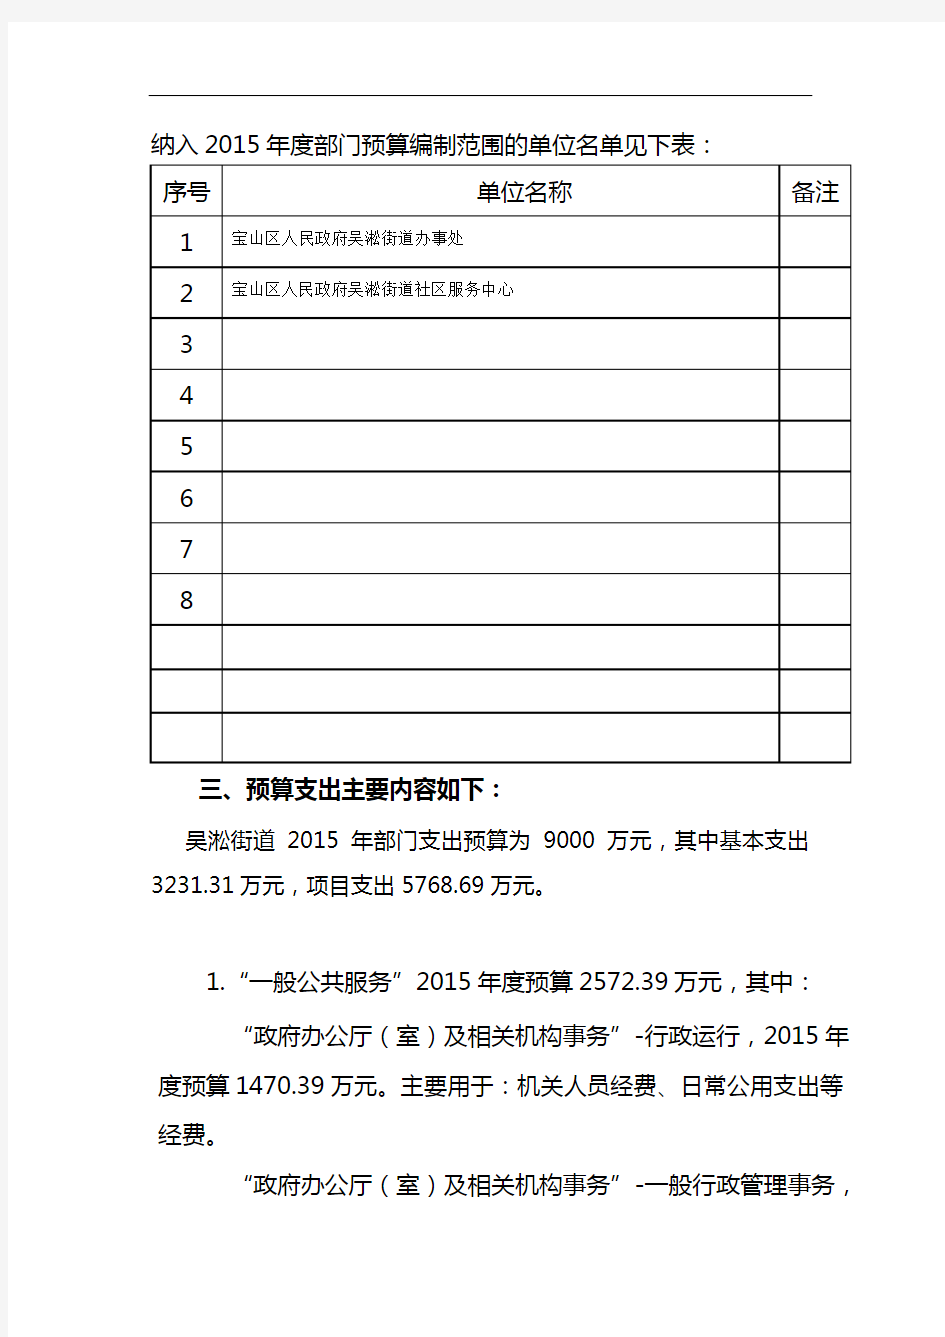 2015年吴淞街道部门预算编制说明